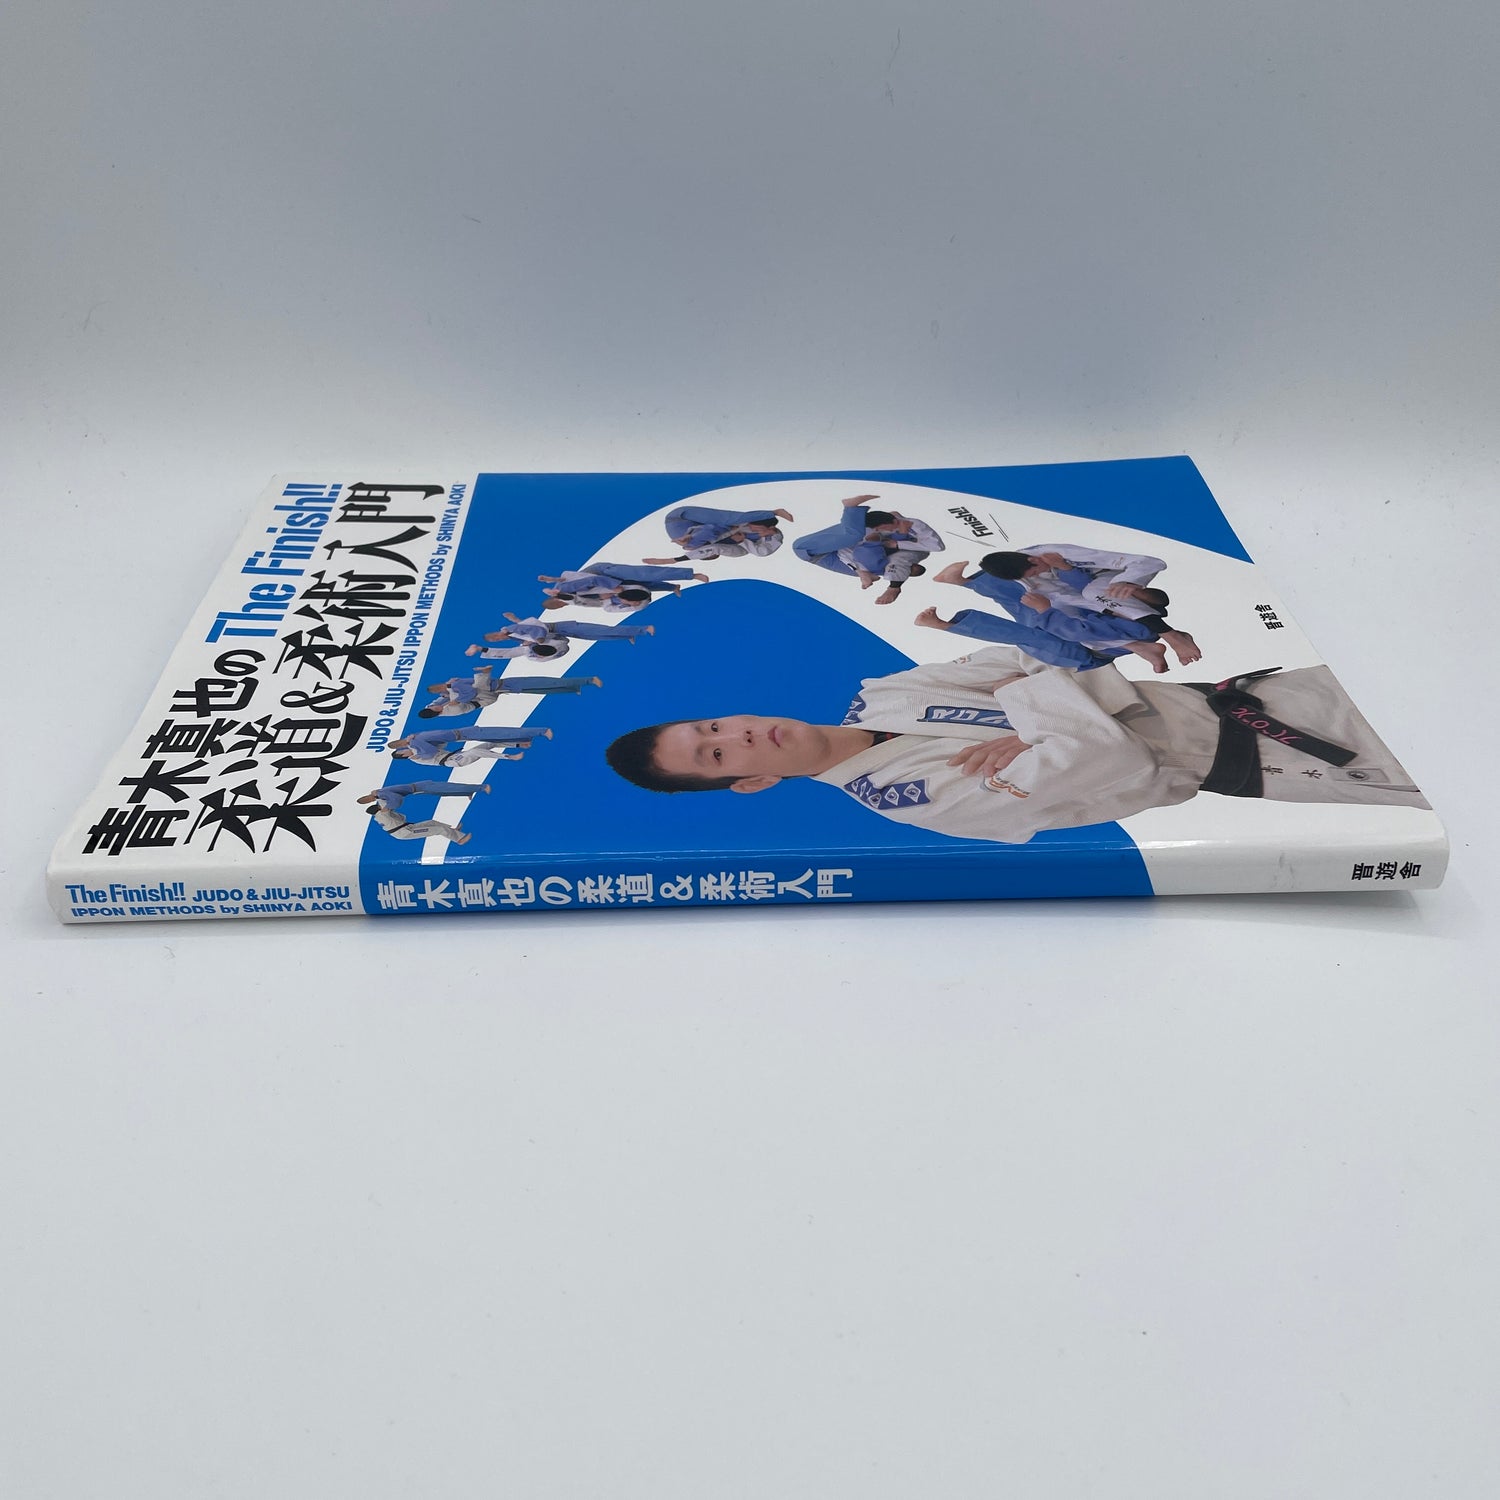 Libro de métodos de judo y jiu-jitsu ippon de Shinya Aoki (usado)